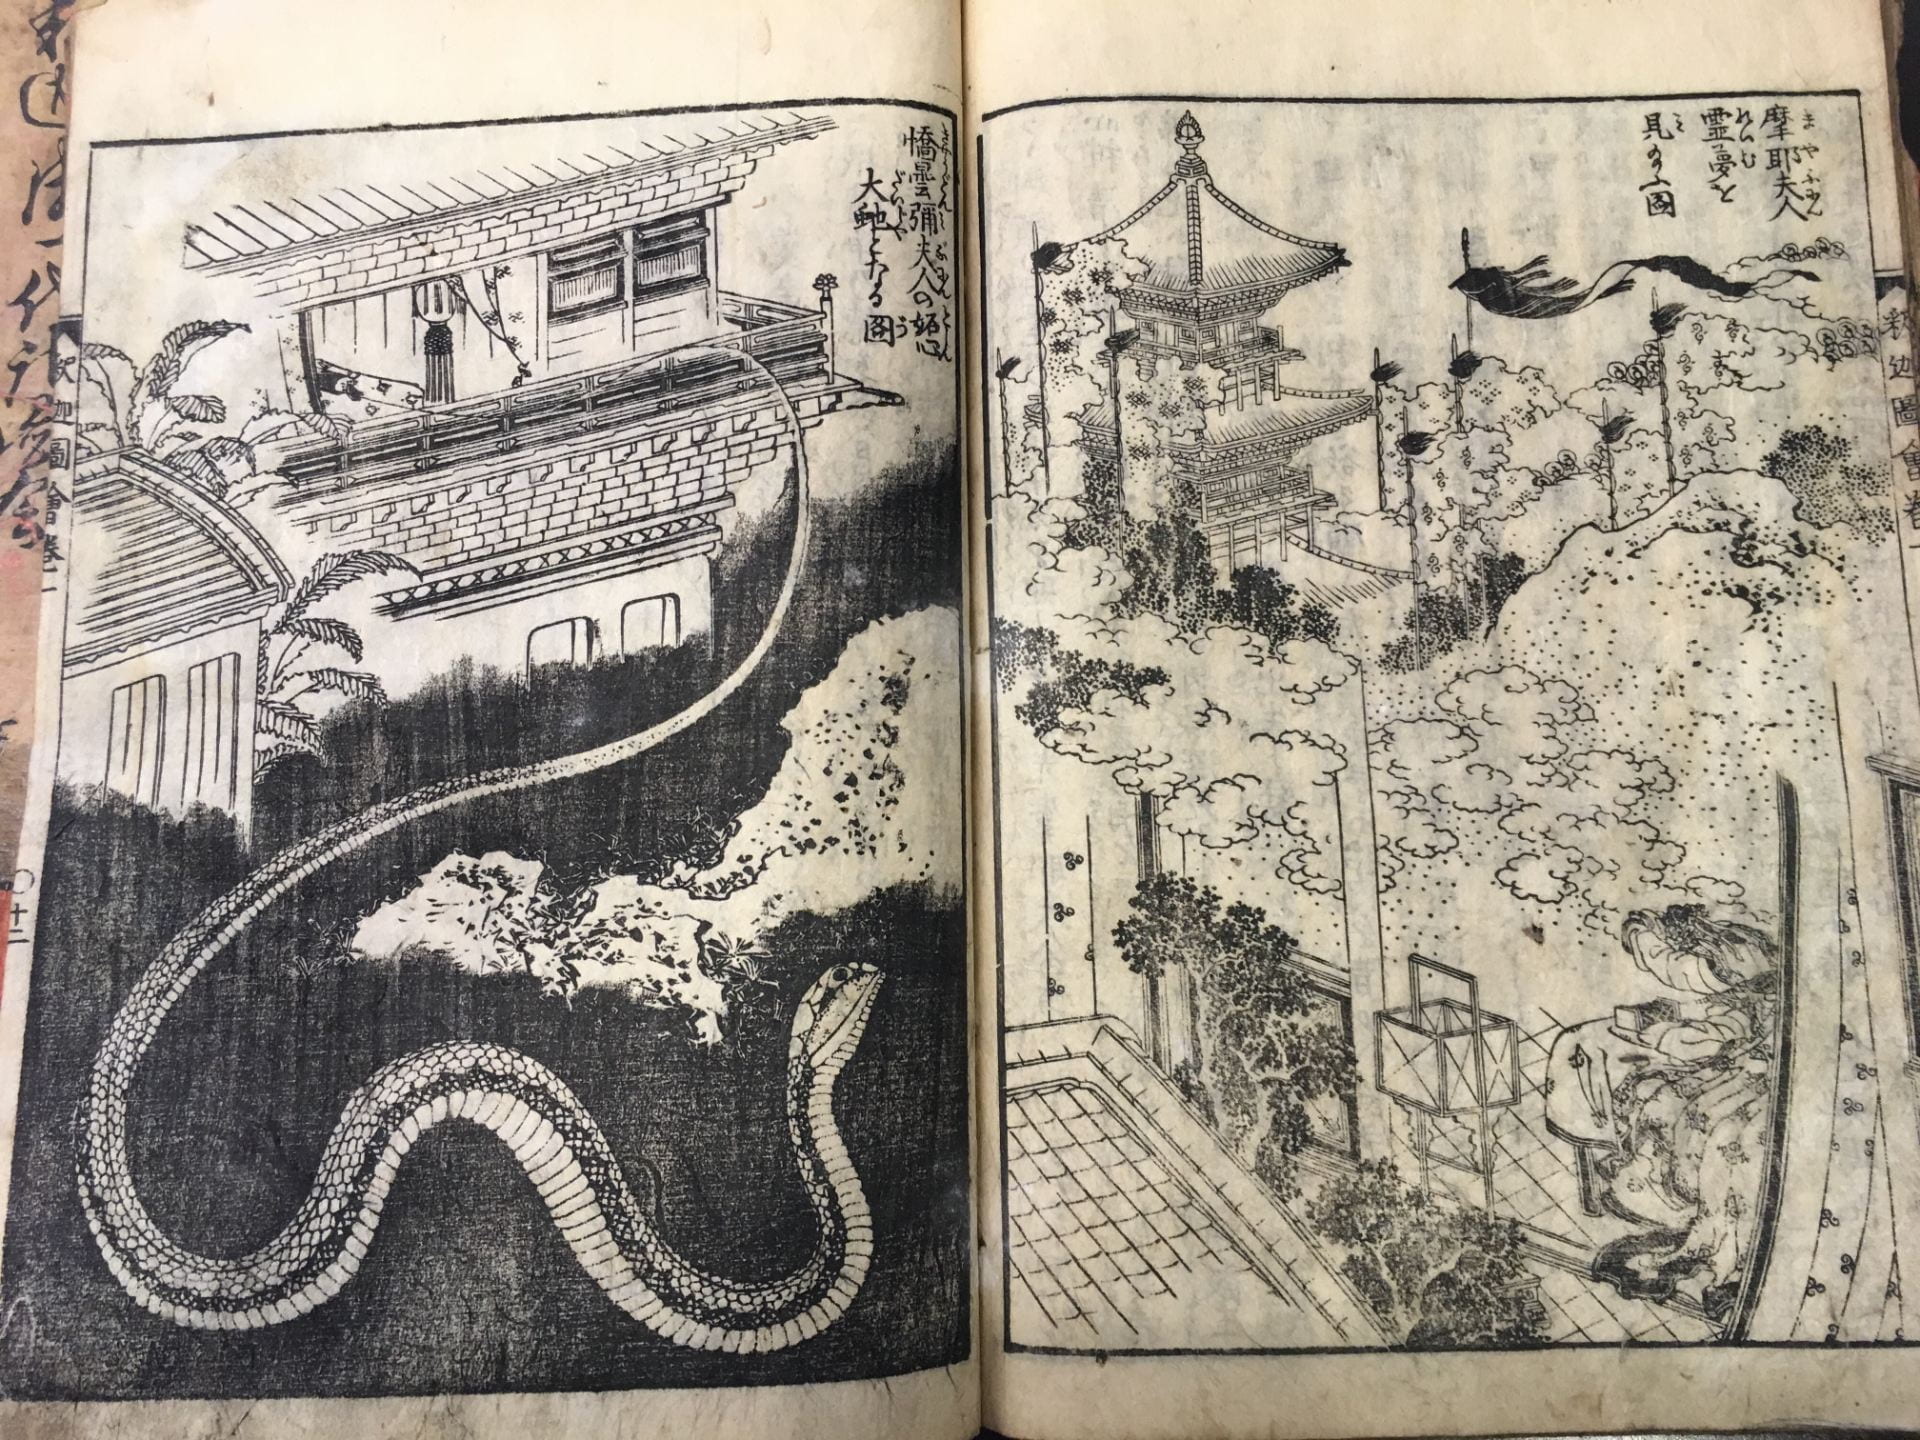 Yamada Isai 山田意斎 and Katsushika Hokusai 葛飾北斎, Shaka go 